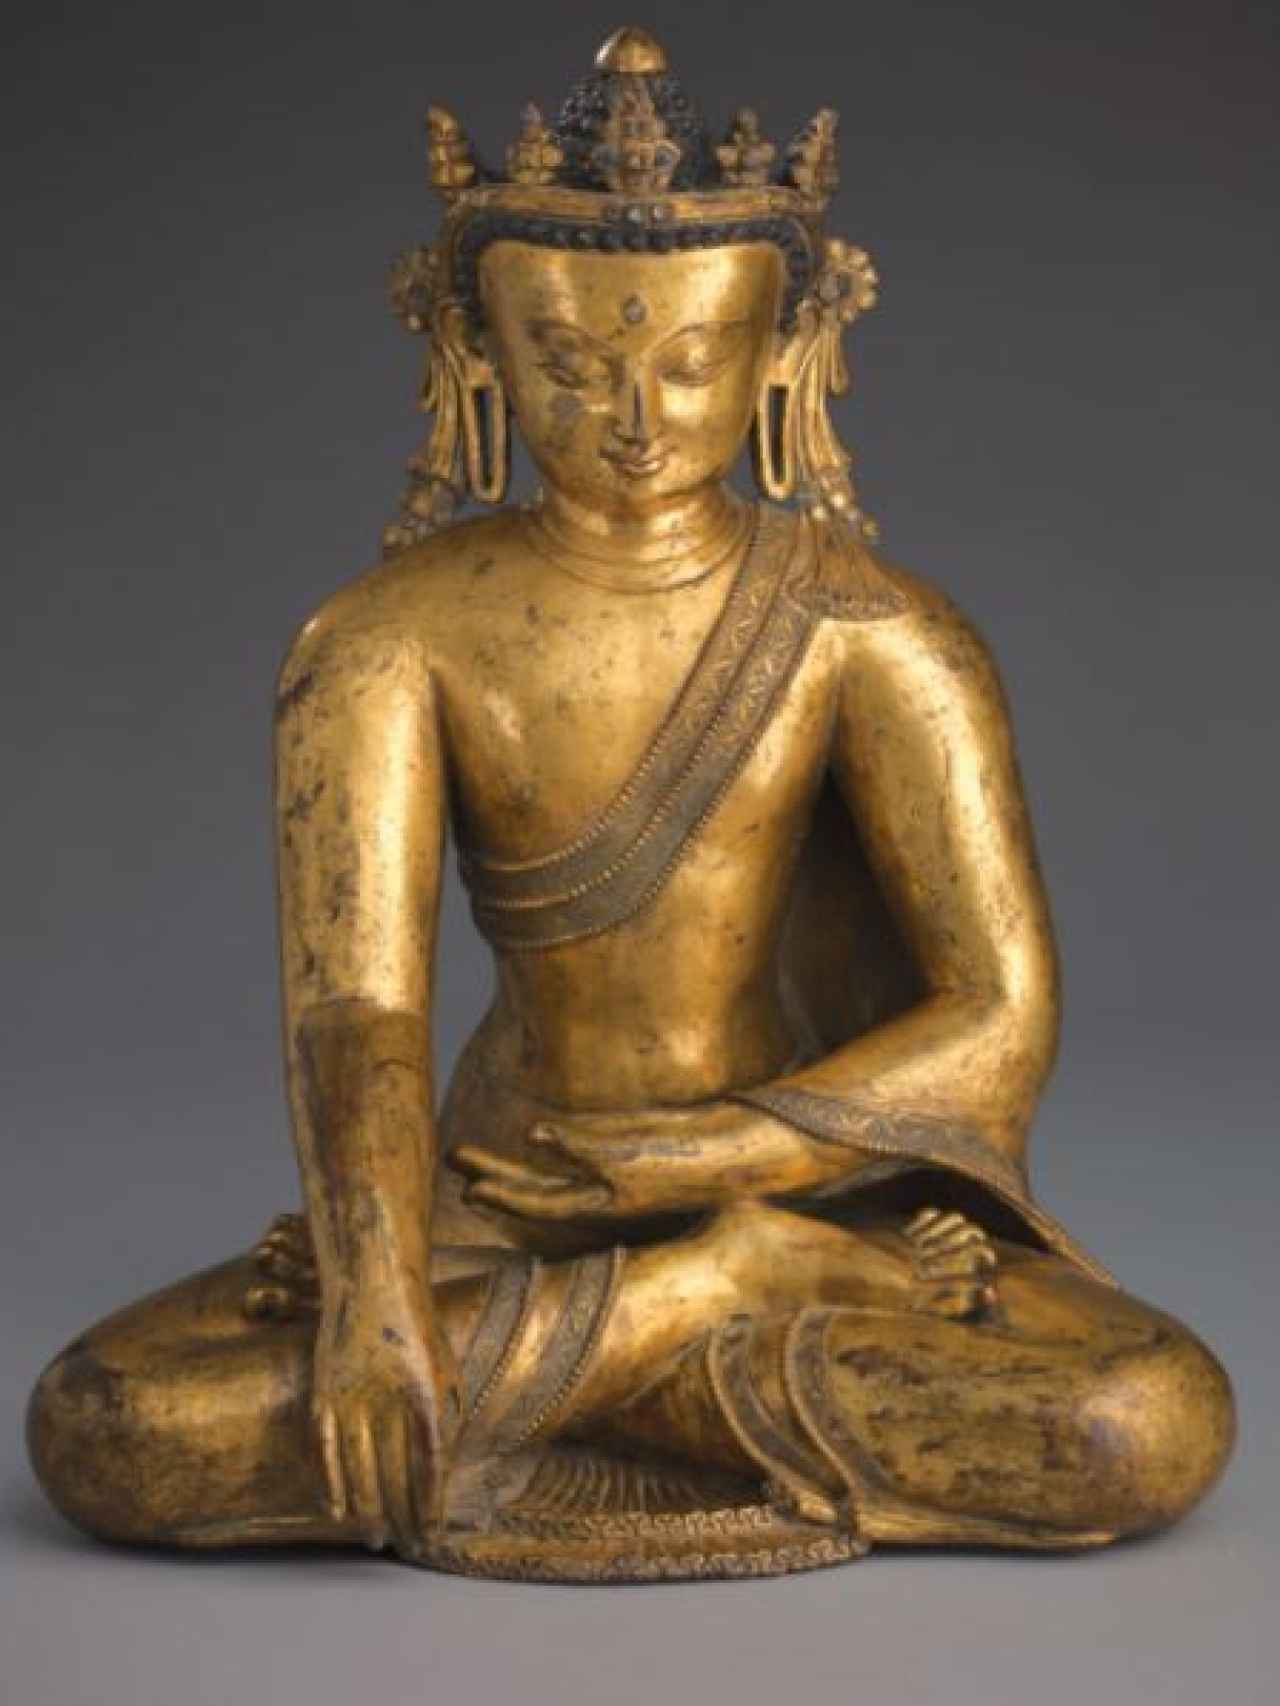 Imagen completa del Buda puesto a la venta.